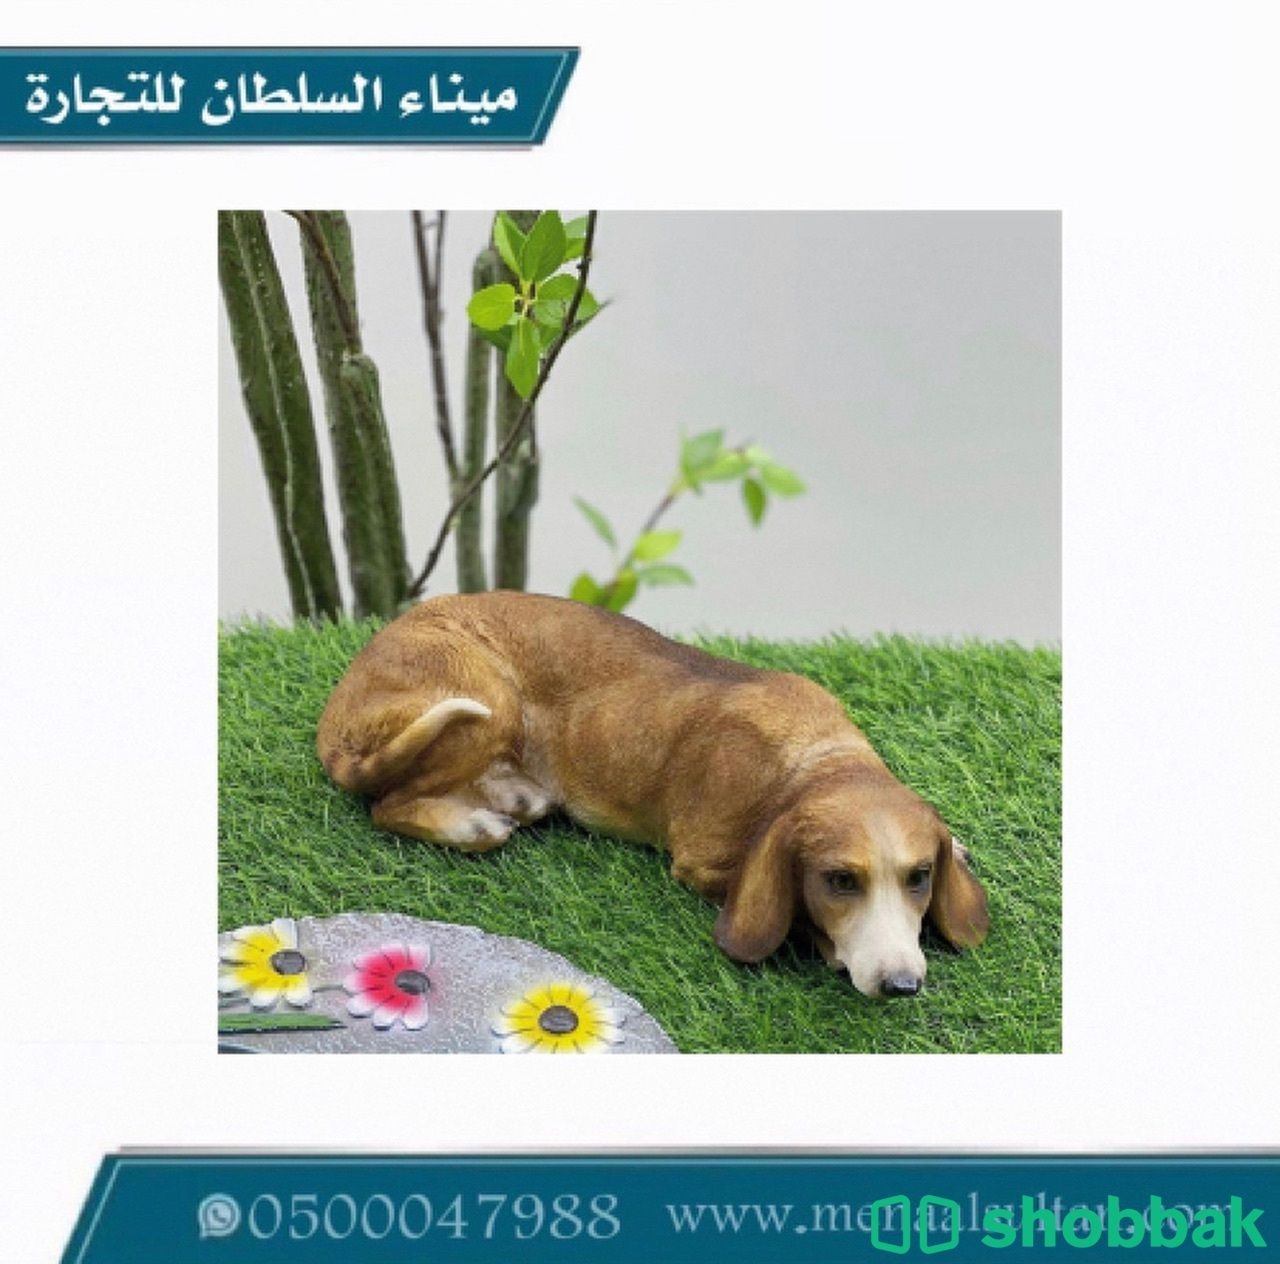 ديكور كلب سيراميك   Shobbak Saudi Arabia